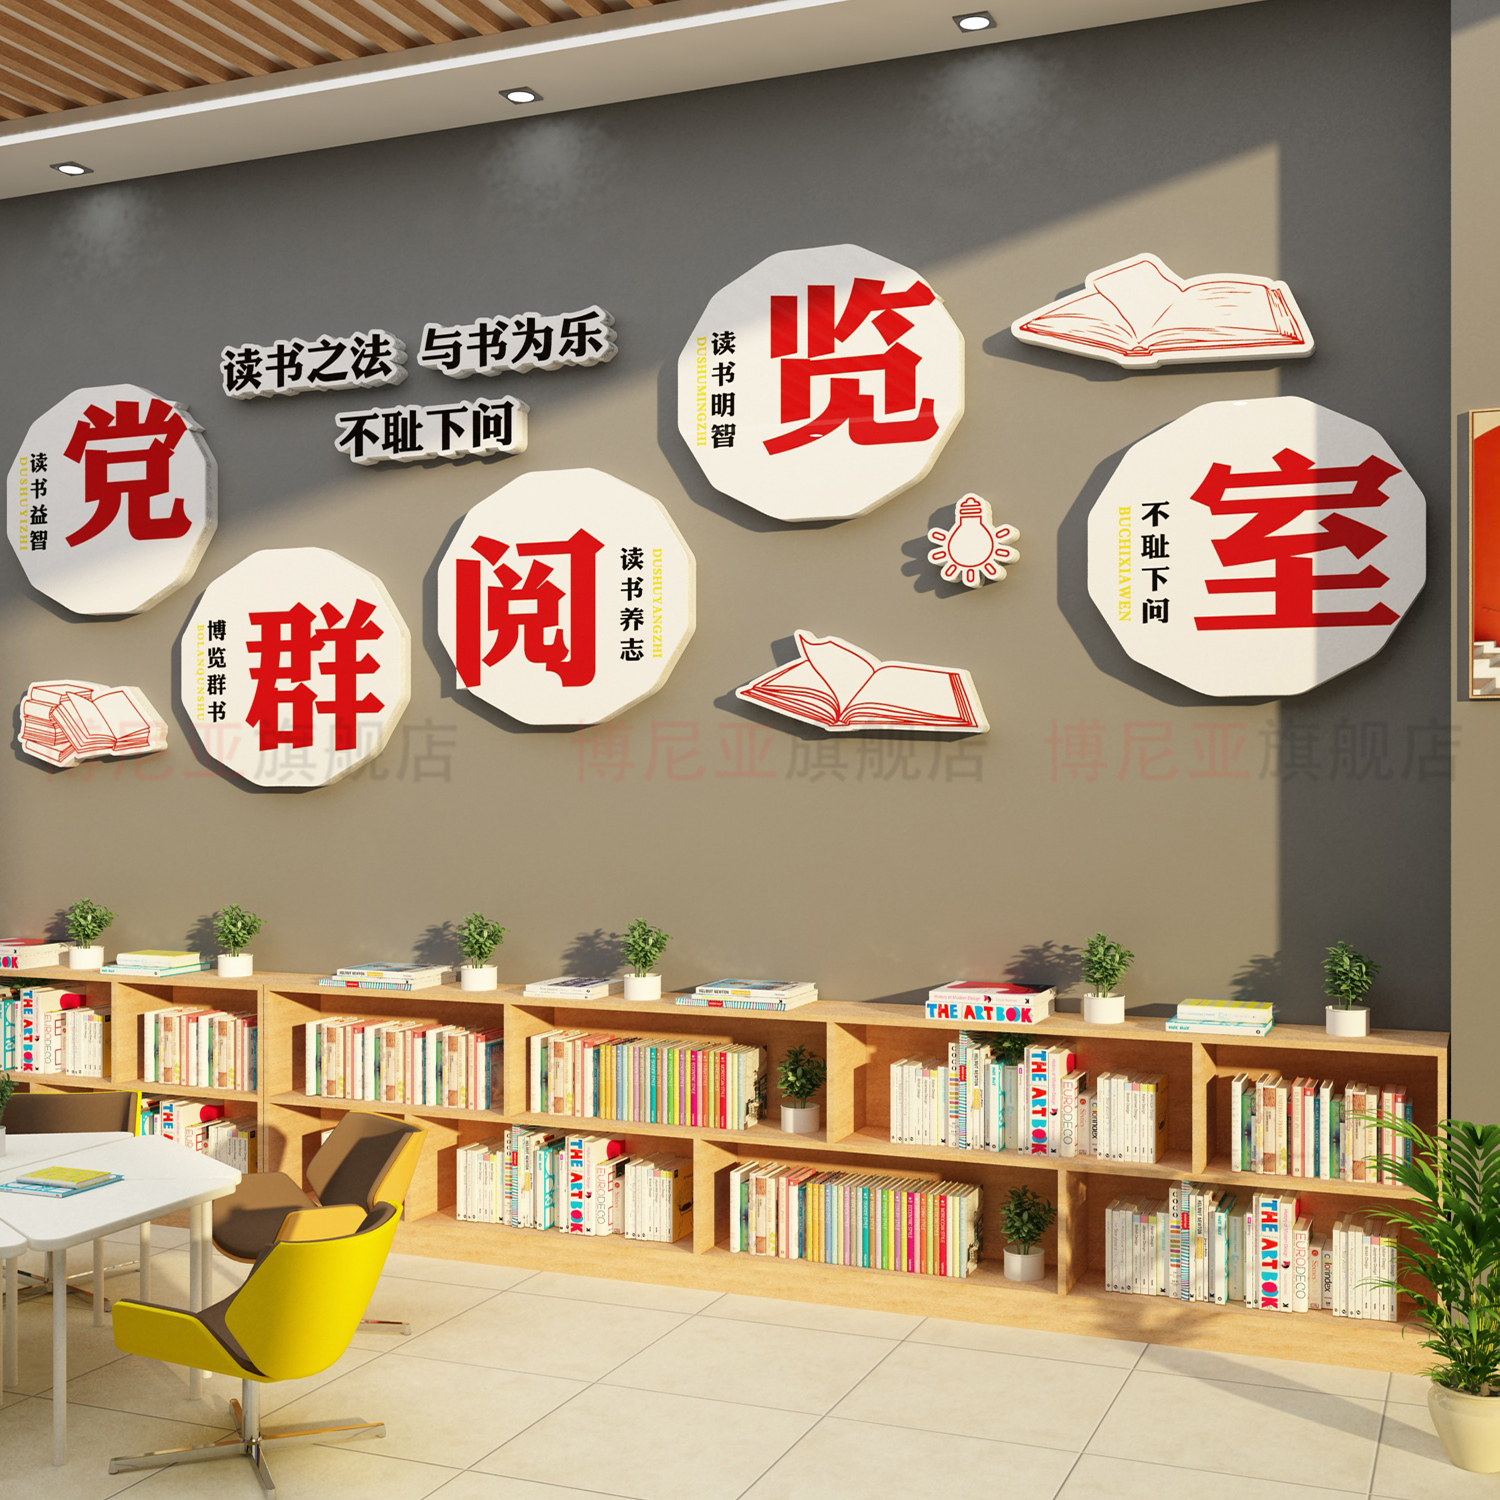 党建书屋阅览区读角图书馆室墙面装饰布置红色文化教育职工支部员